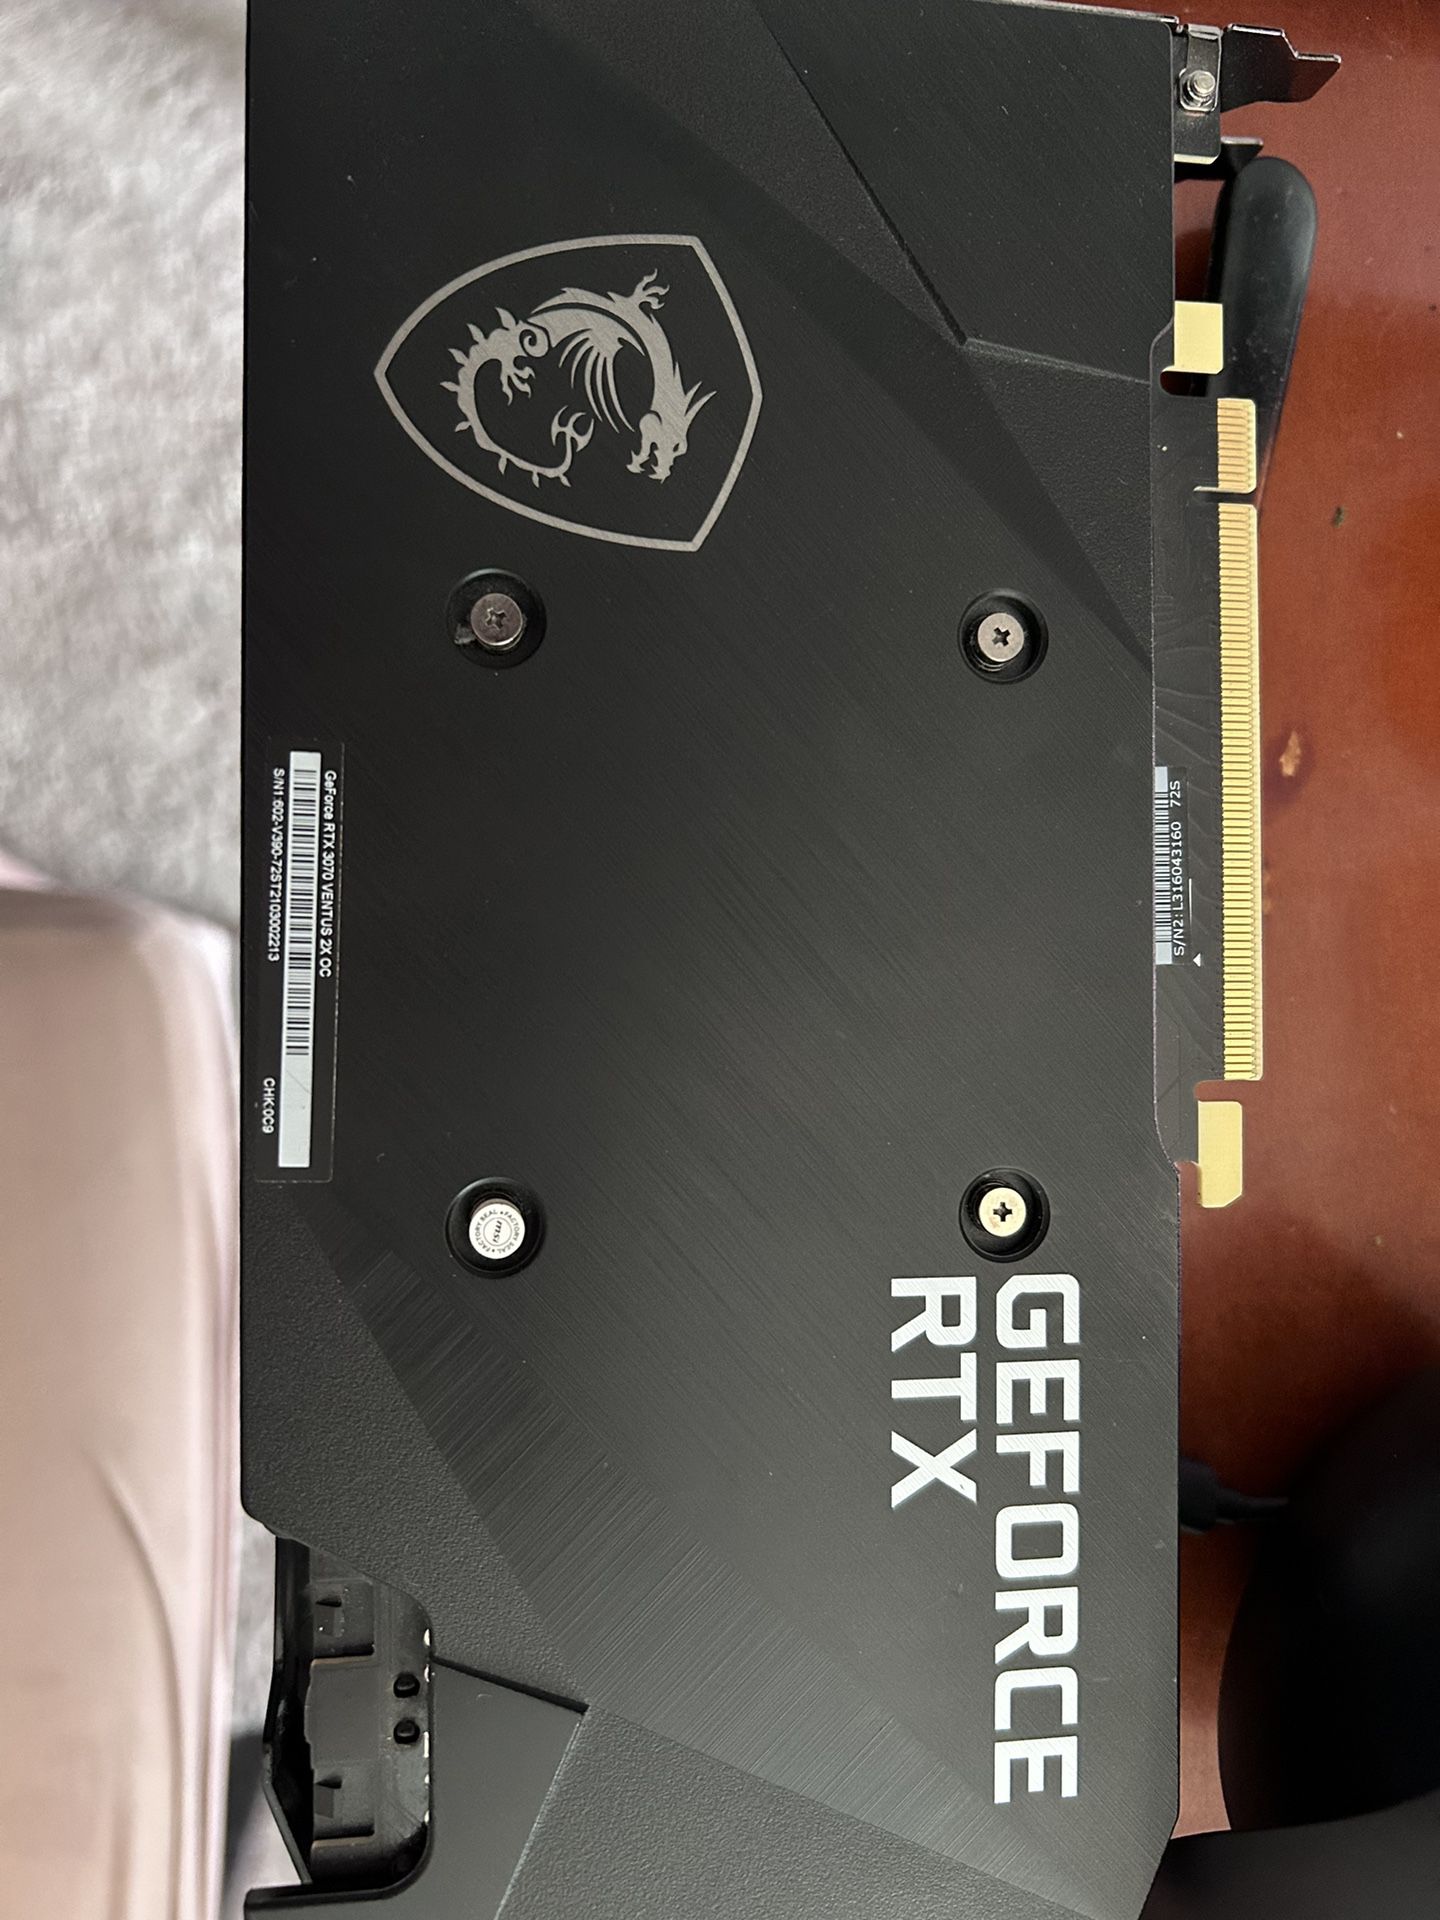 RTX 3070 GPU